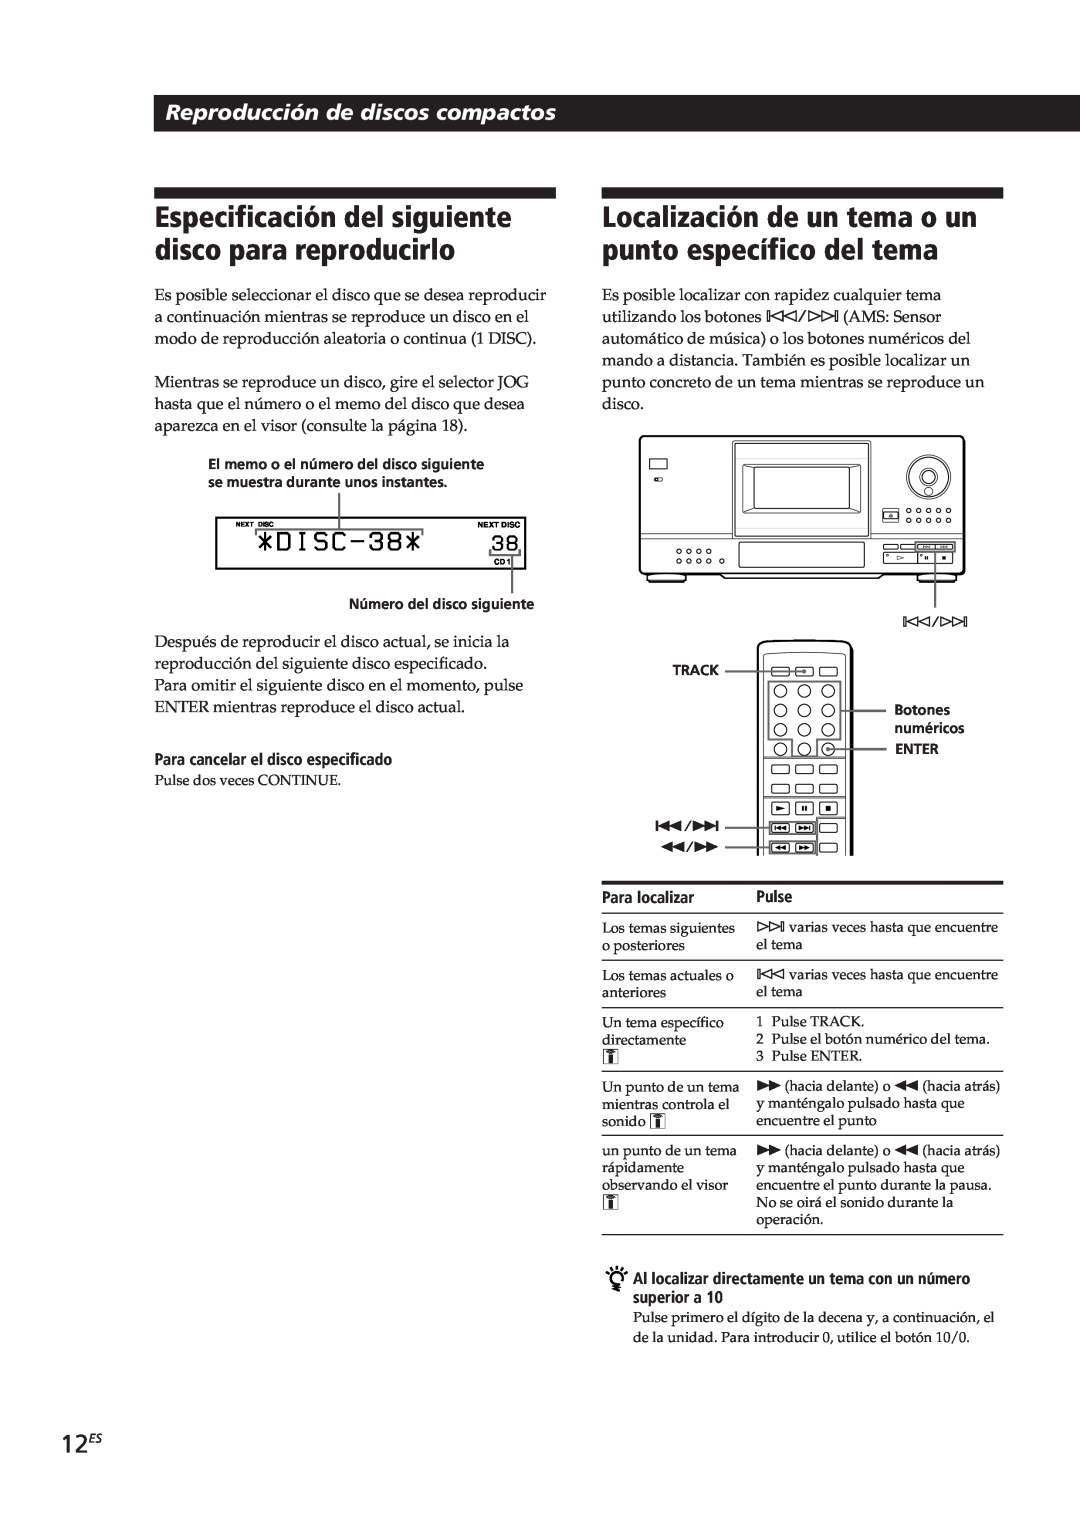 Sony CDP-CX153 manual 12ES, Para cancelar el disco especificado, Para localizar, Pulse 